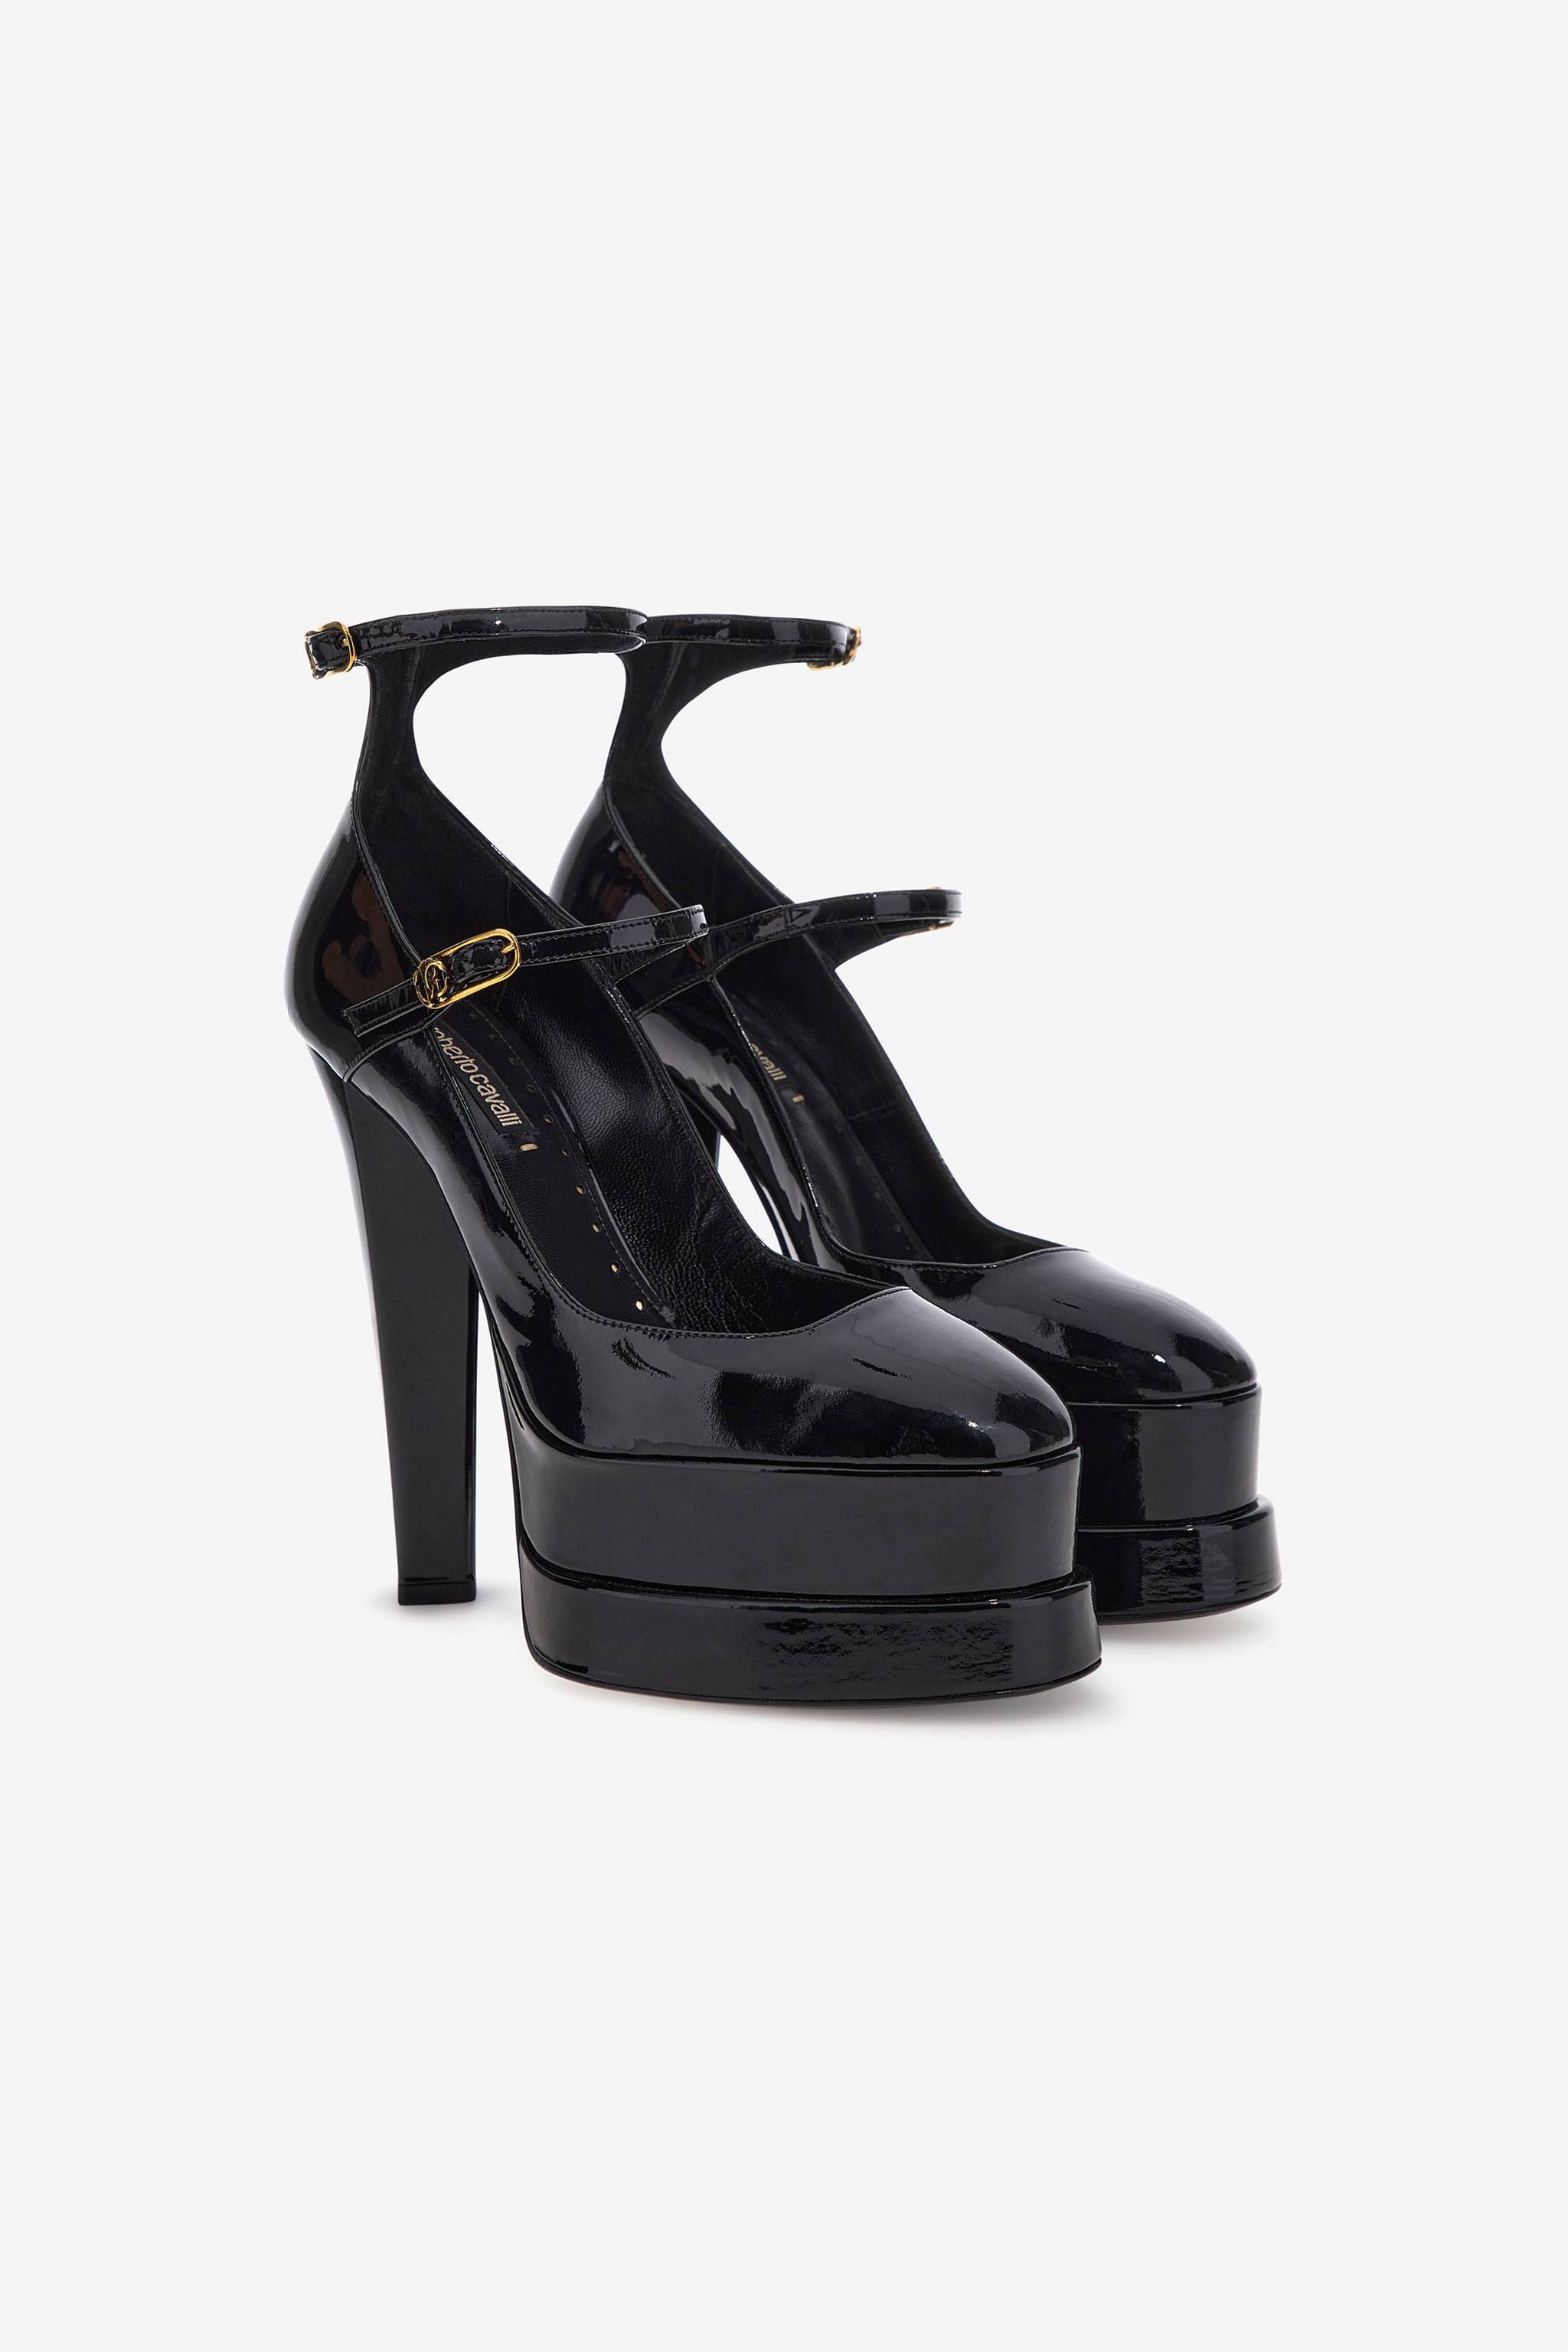 Platform sandals with straps | NERO 191101 | Women | Roberto Cavalli FR